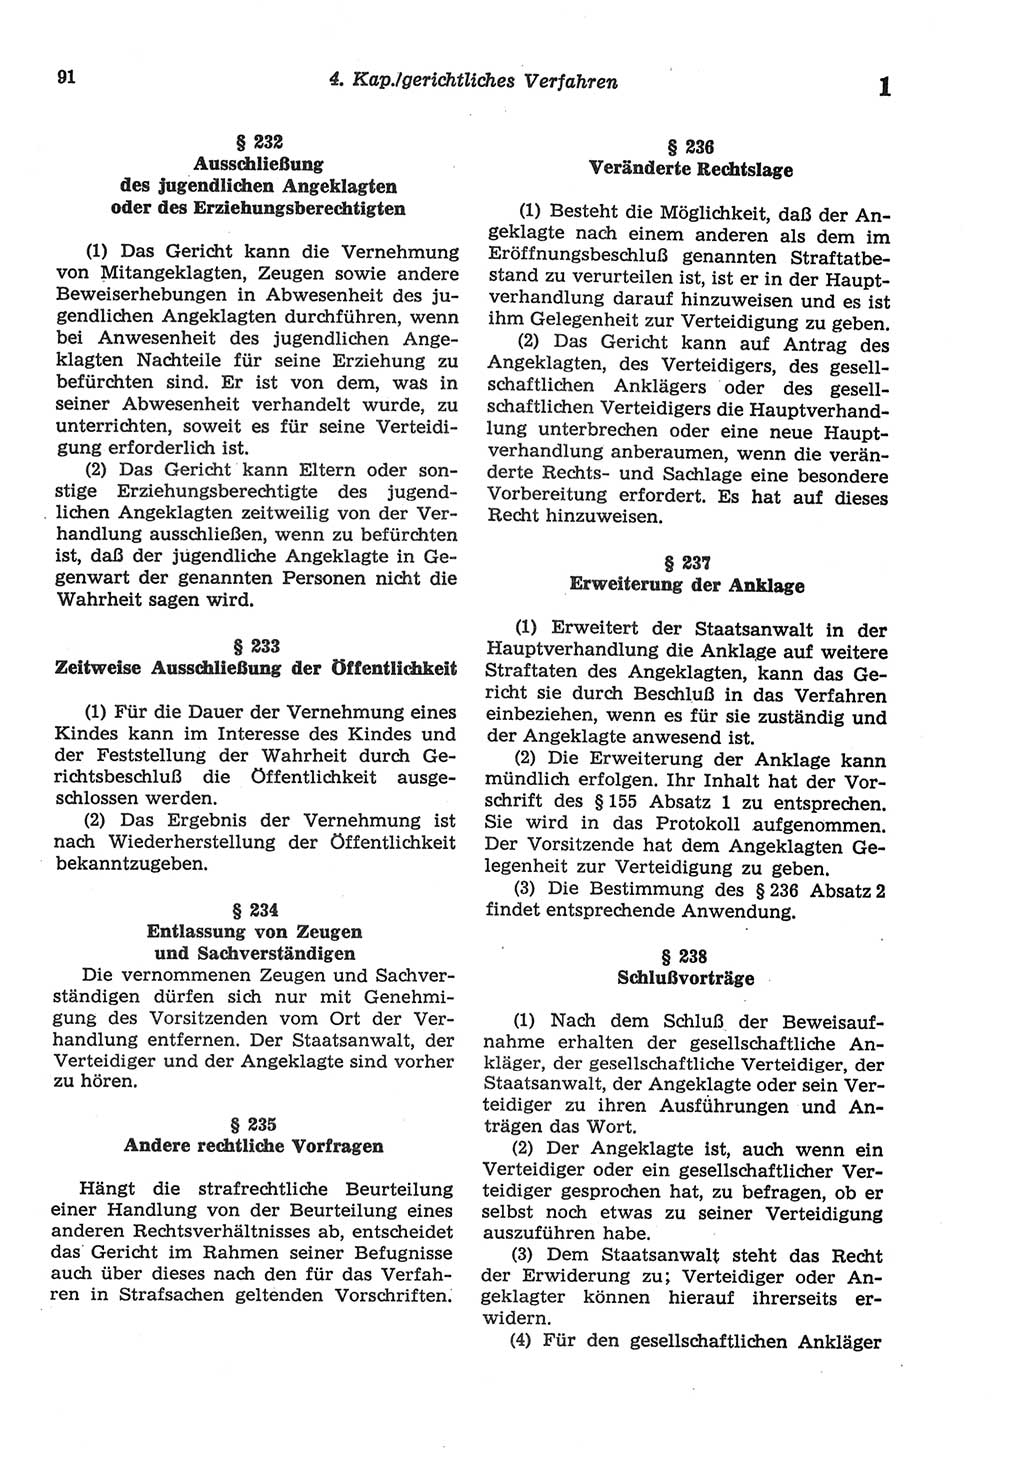 Strafprozeßordnung (StPO) der Deutschen Demokratischen Republik (DDR) sowie angrenzende Gesetze und Bestimmungen 1977, Seite 91 (StPO DDR Ges. Best. 1977, S. 91)